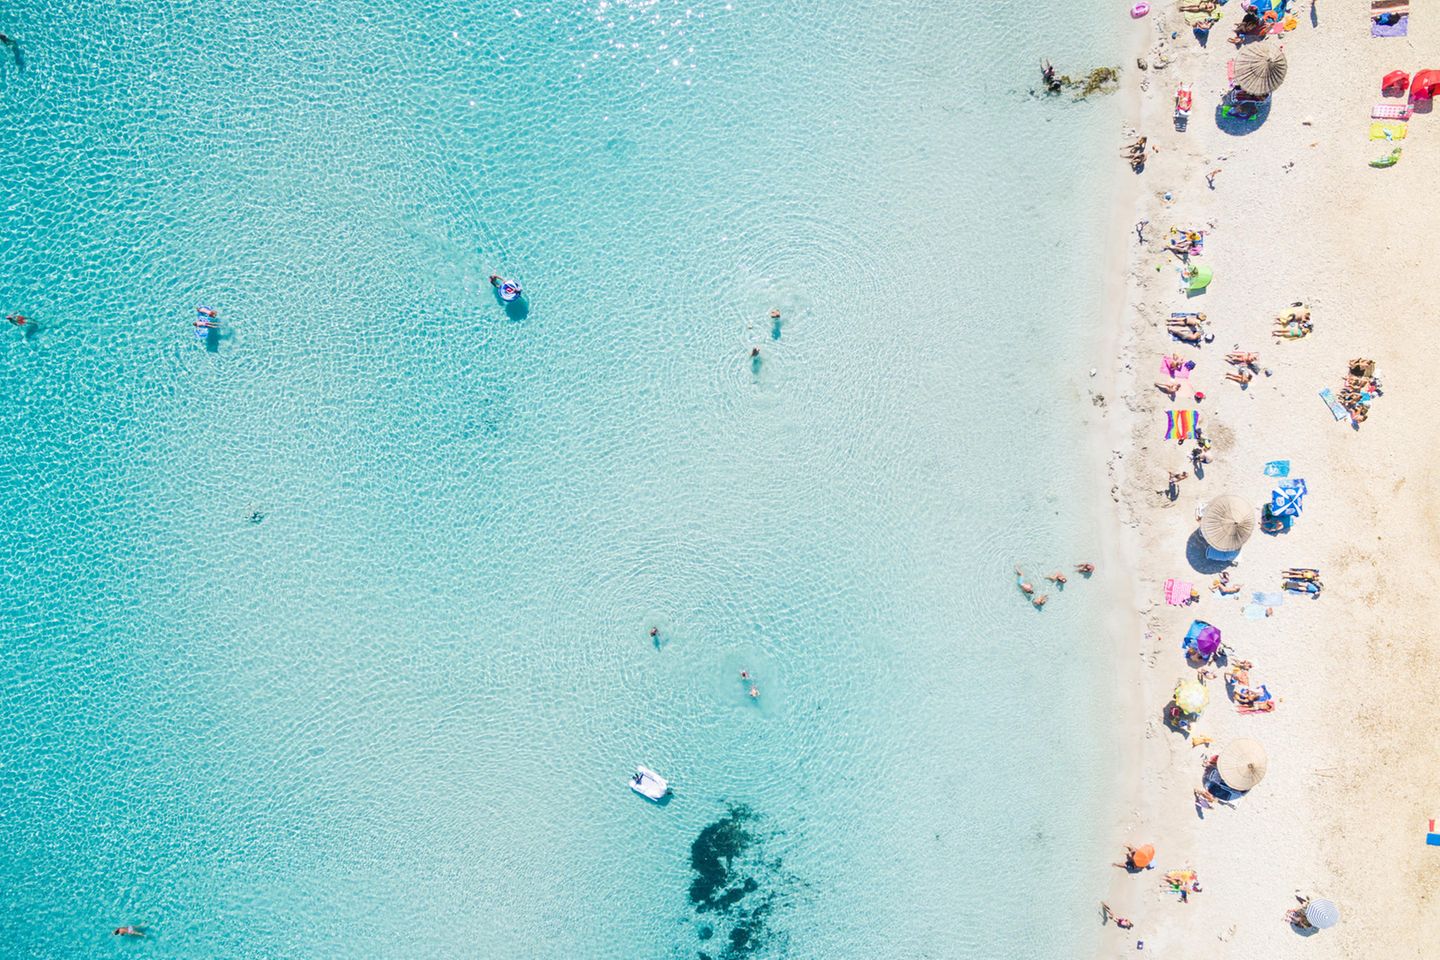 Luftbild von oben auf einen Strand am Mittelmeer